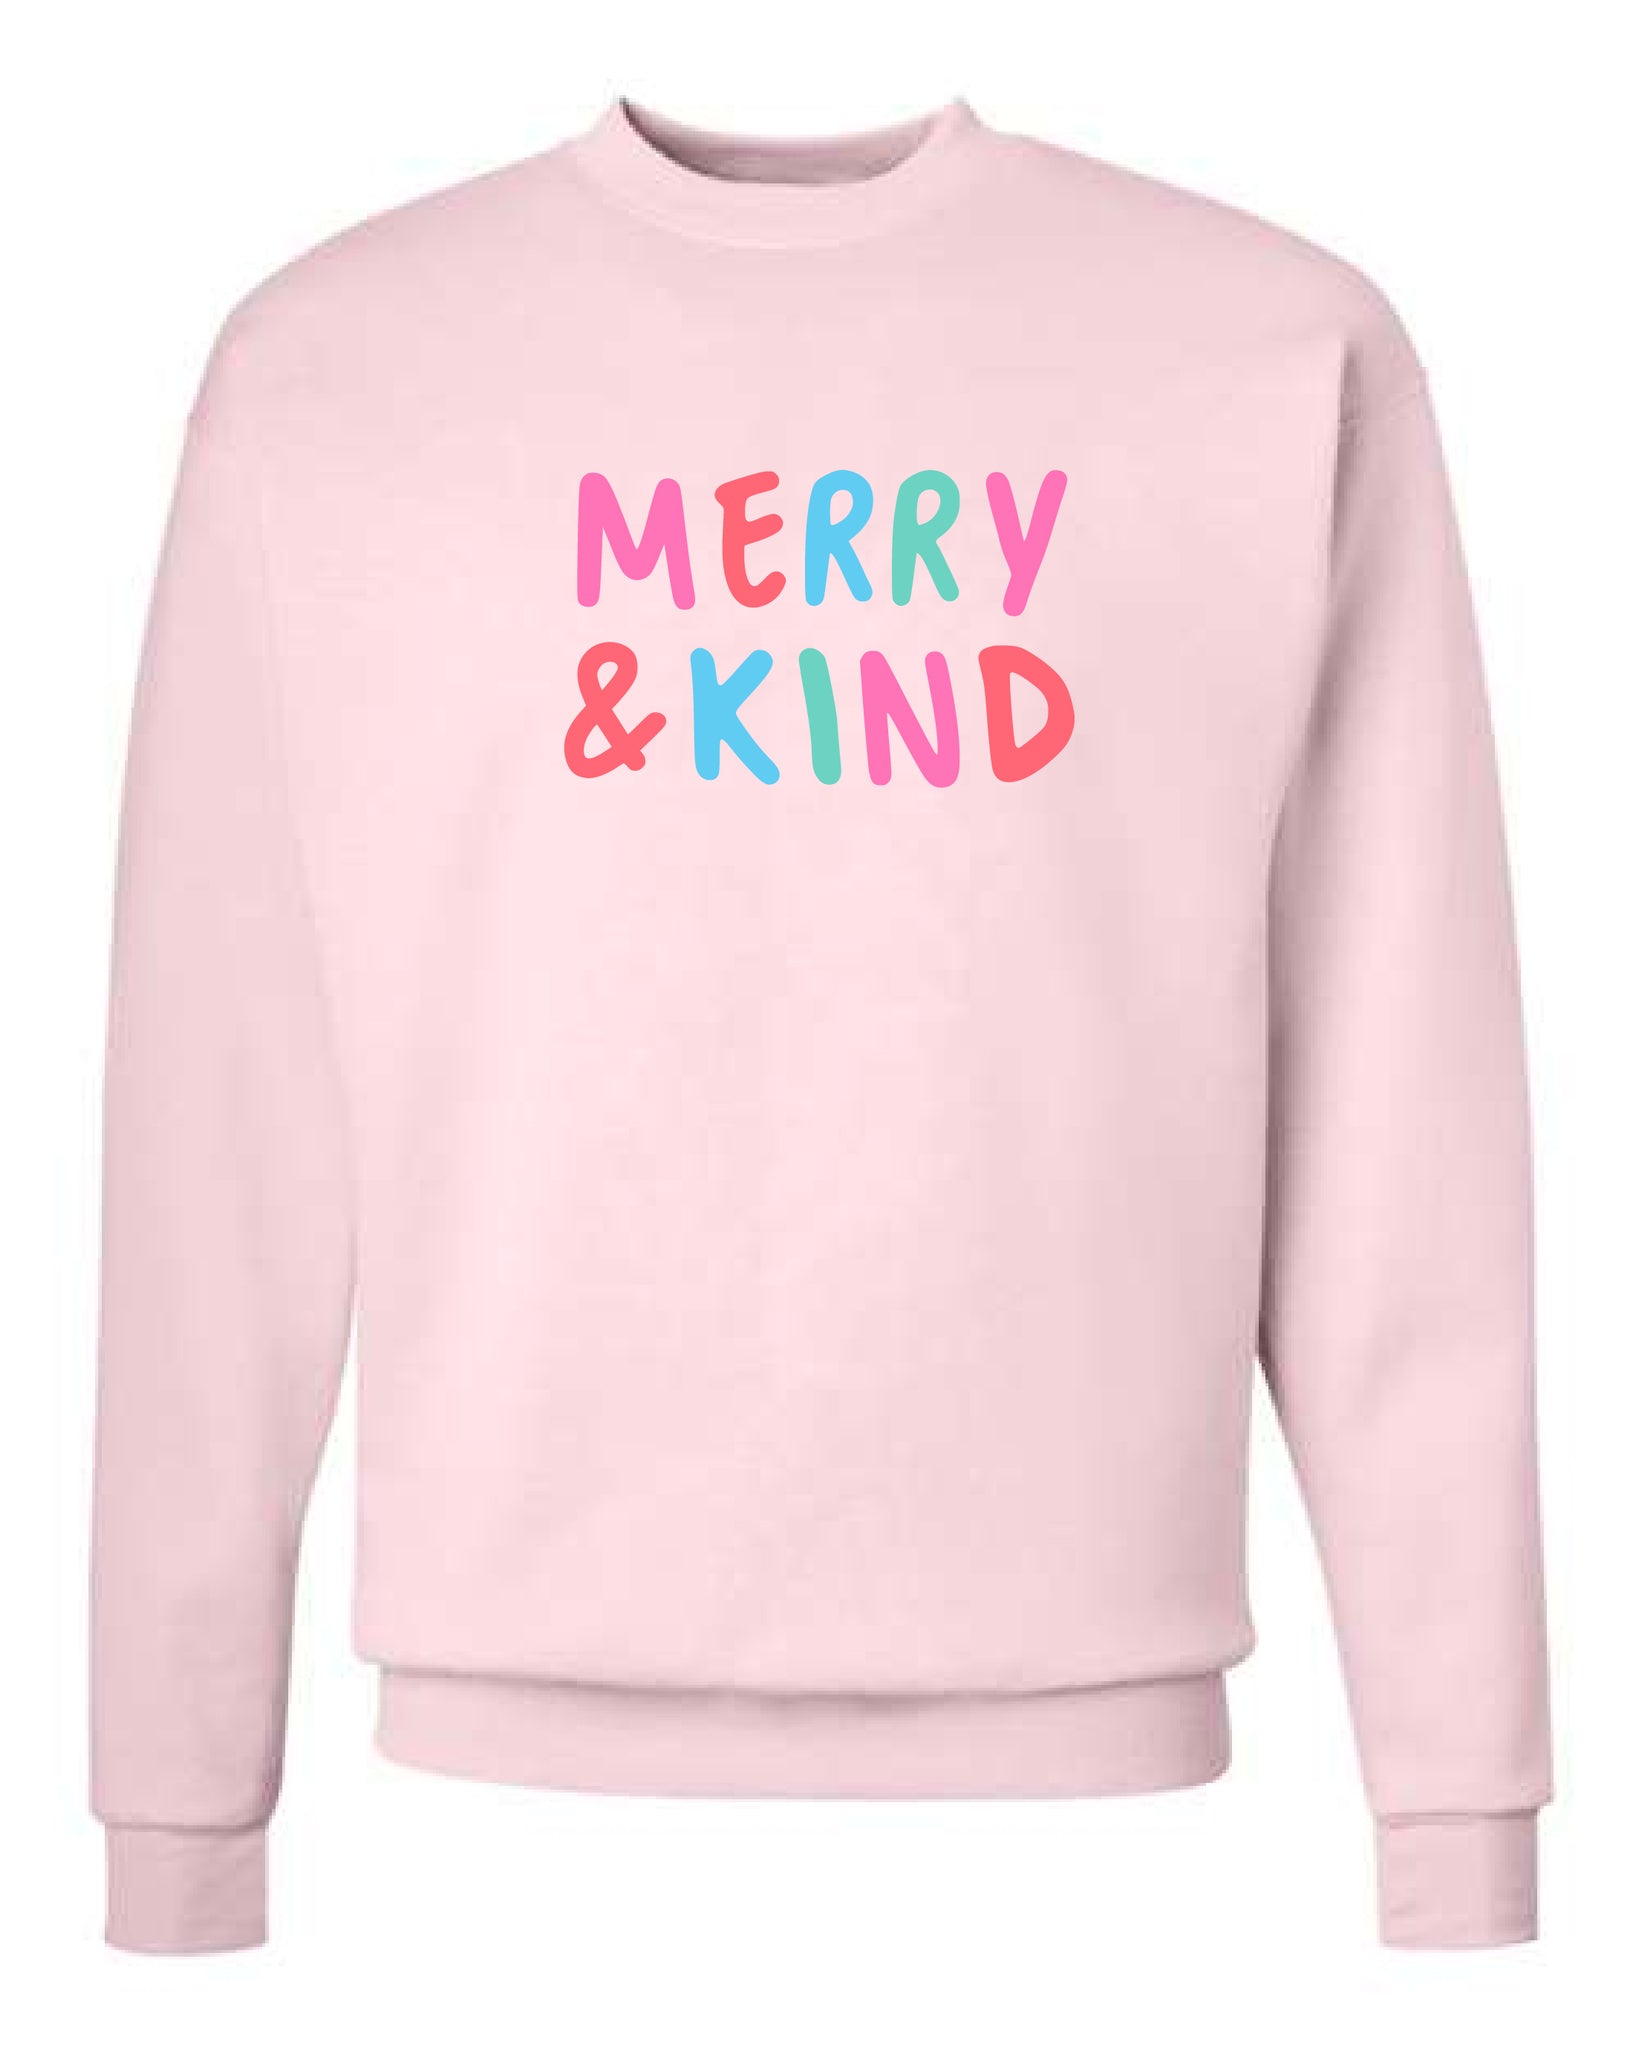 MERRY & KIND: Sweatshirt Pre-order!